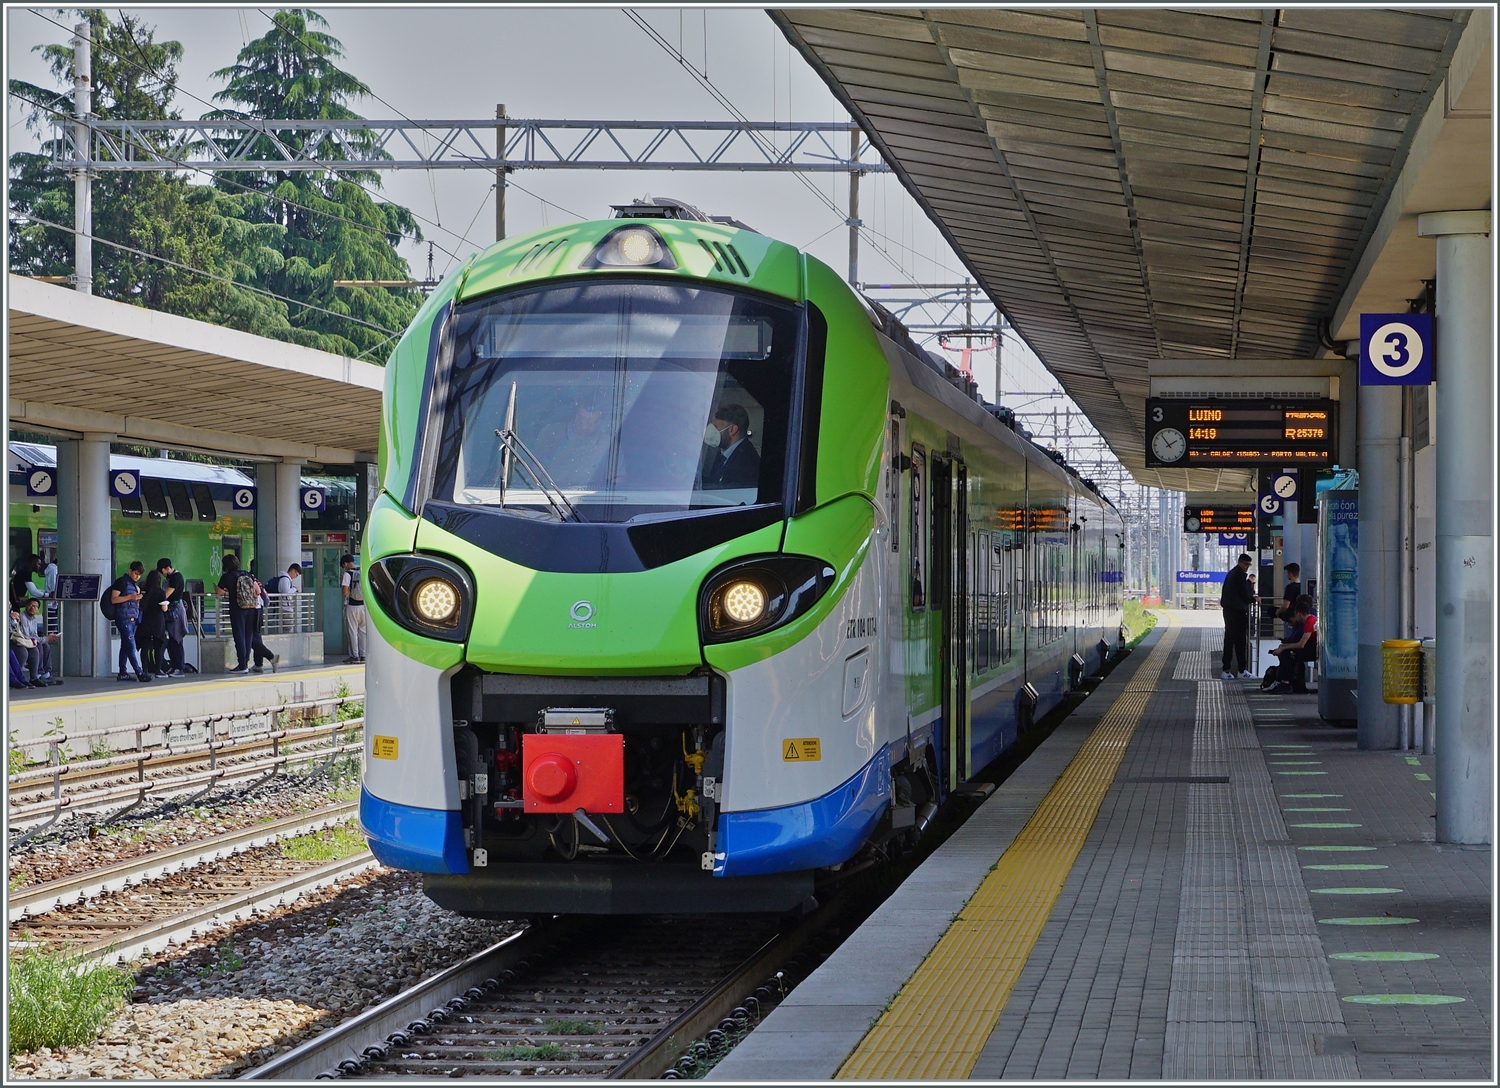 Der Trenord ETR 104 017 steht auf Gleis 3 in Gallarate als Regionalzug R 25370 nach Luino zur Abfahrt um 14:18 bereit. 

23. Mi 2023